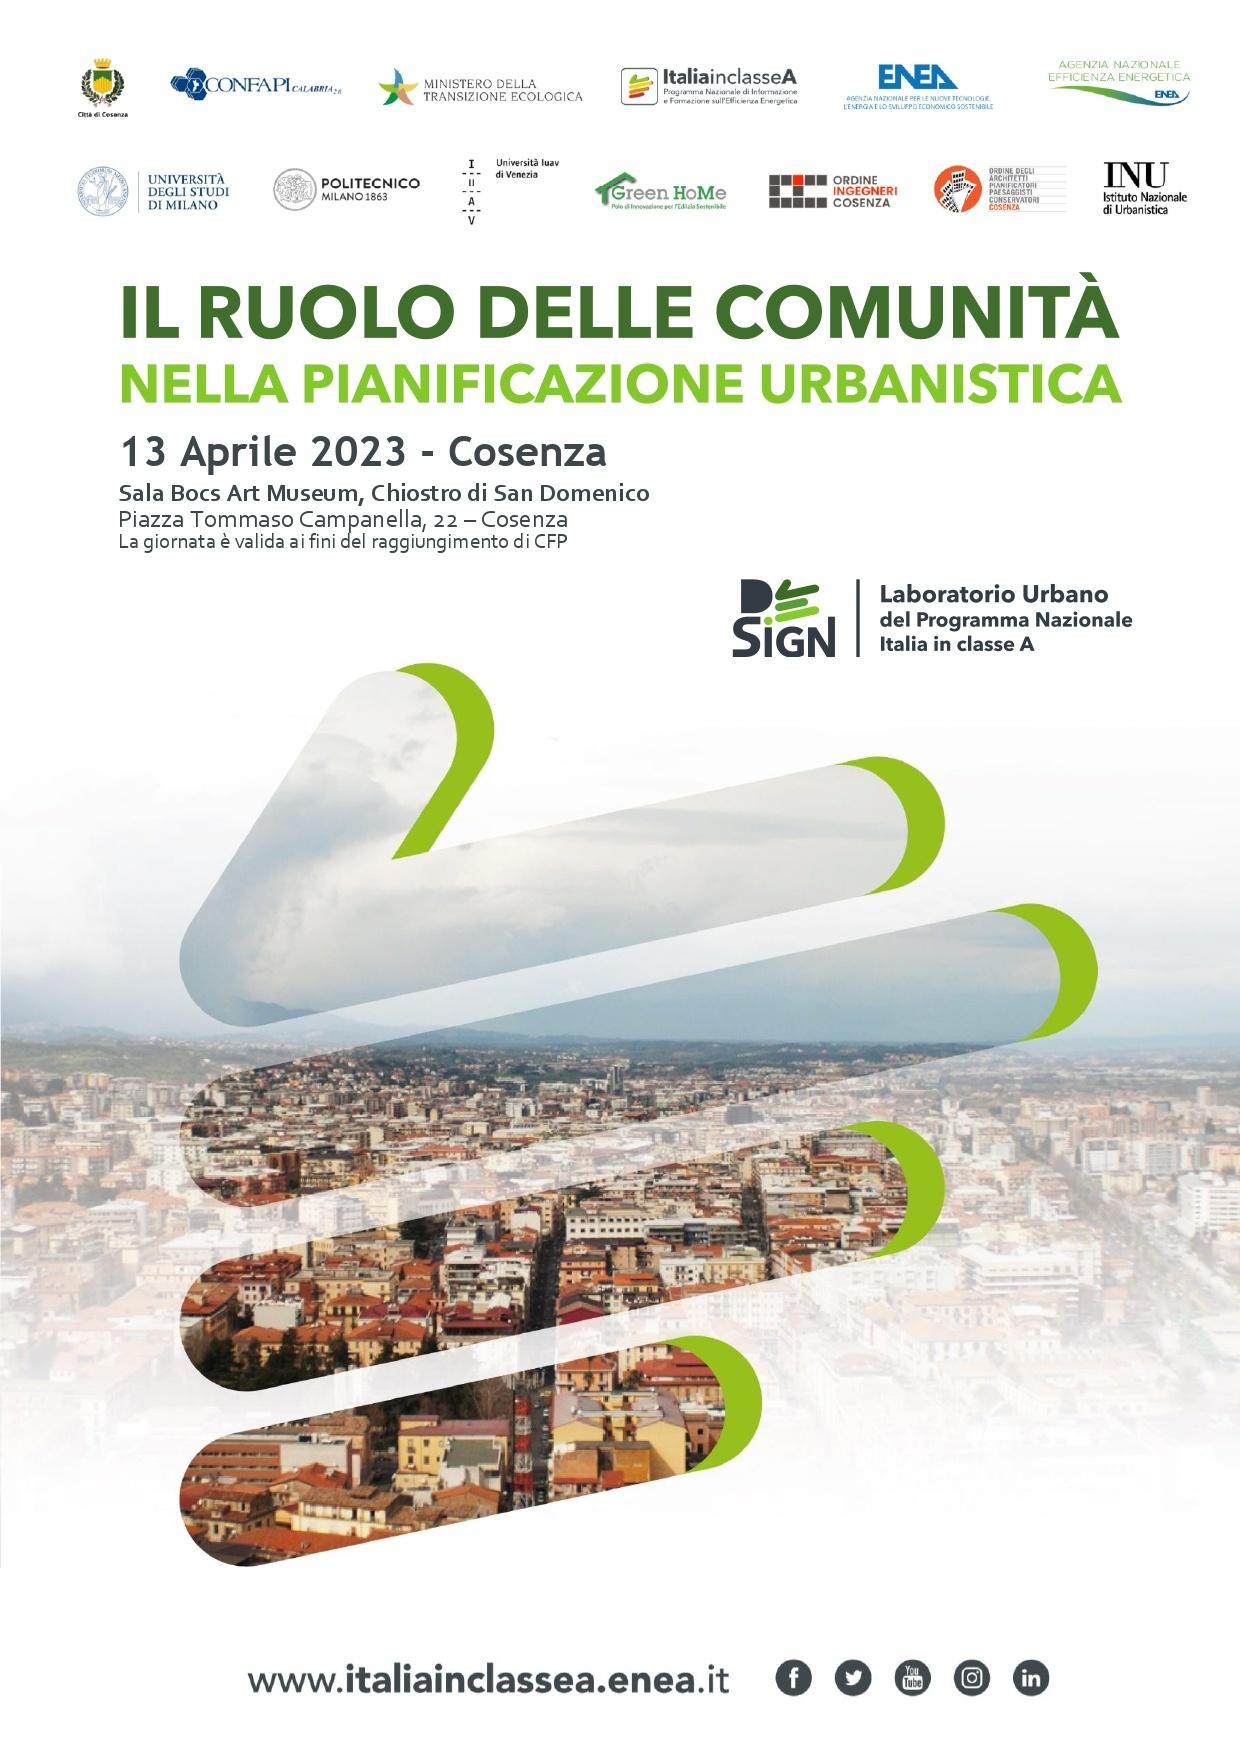 La locandina della giornata formativa "Il ruolo delle comunità nella partecipazione urbana" in programma il 13 aprile a Cosenza con il logo della Campagna Italia in Classe A e quello dei soggetti che vi partecipano